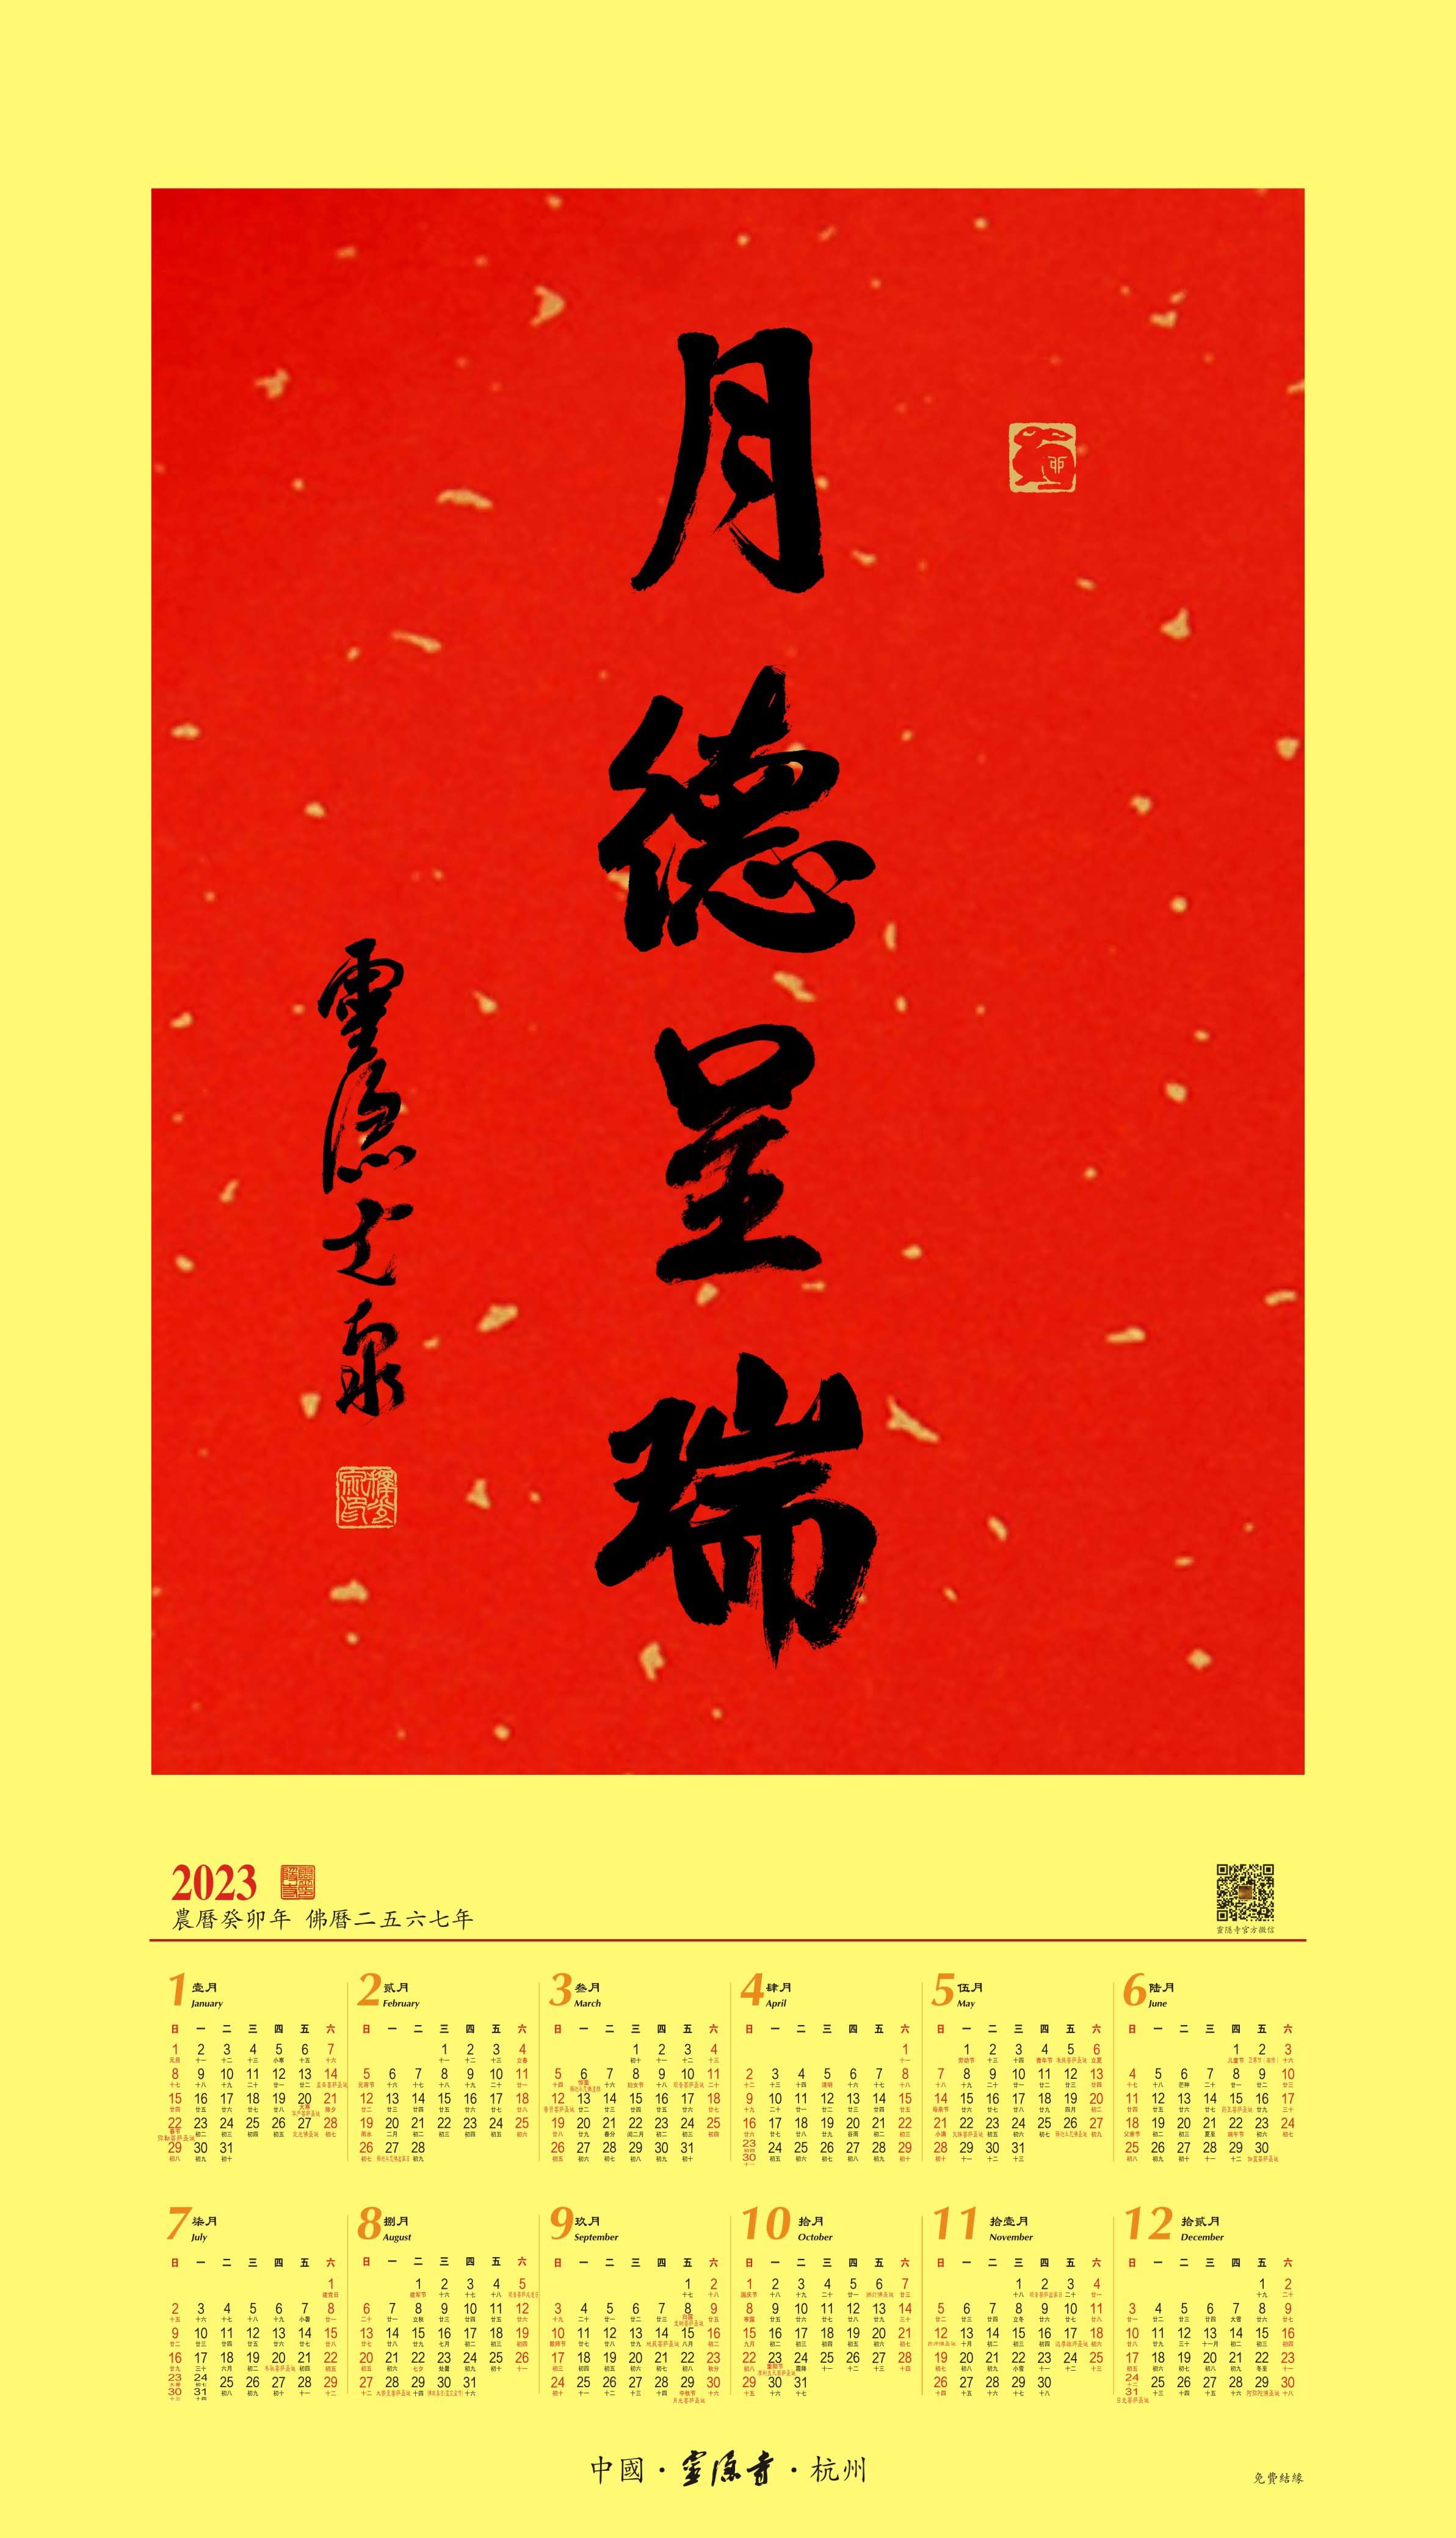 杭州灵隐寺2023年“月德呈瑞”祈福年历今起印刷